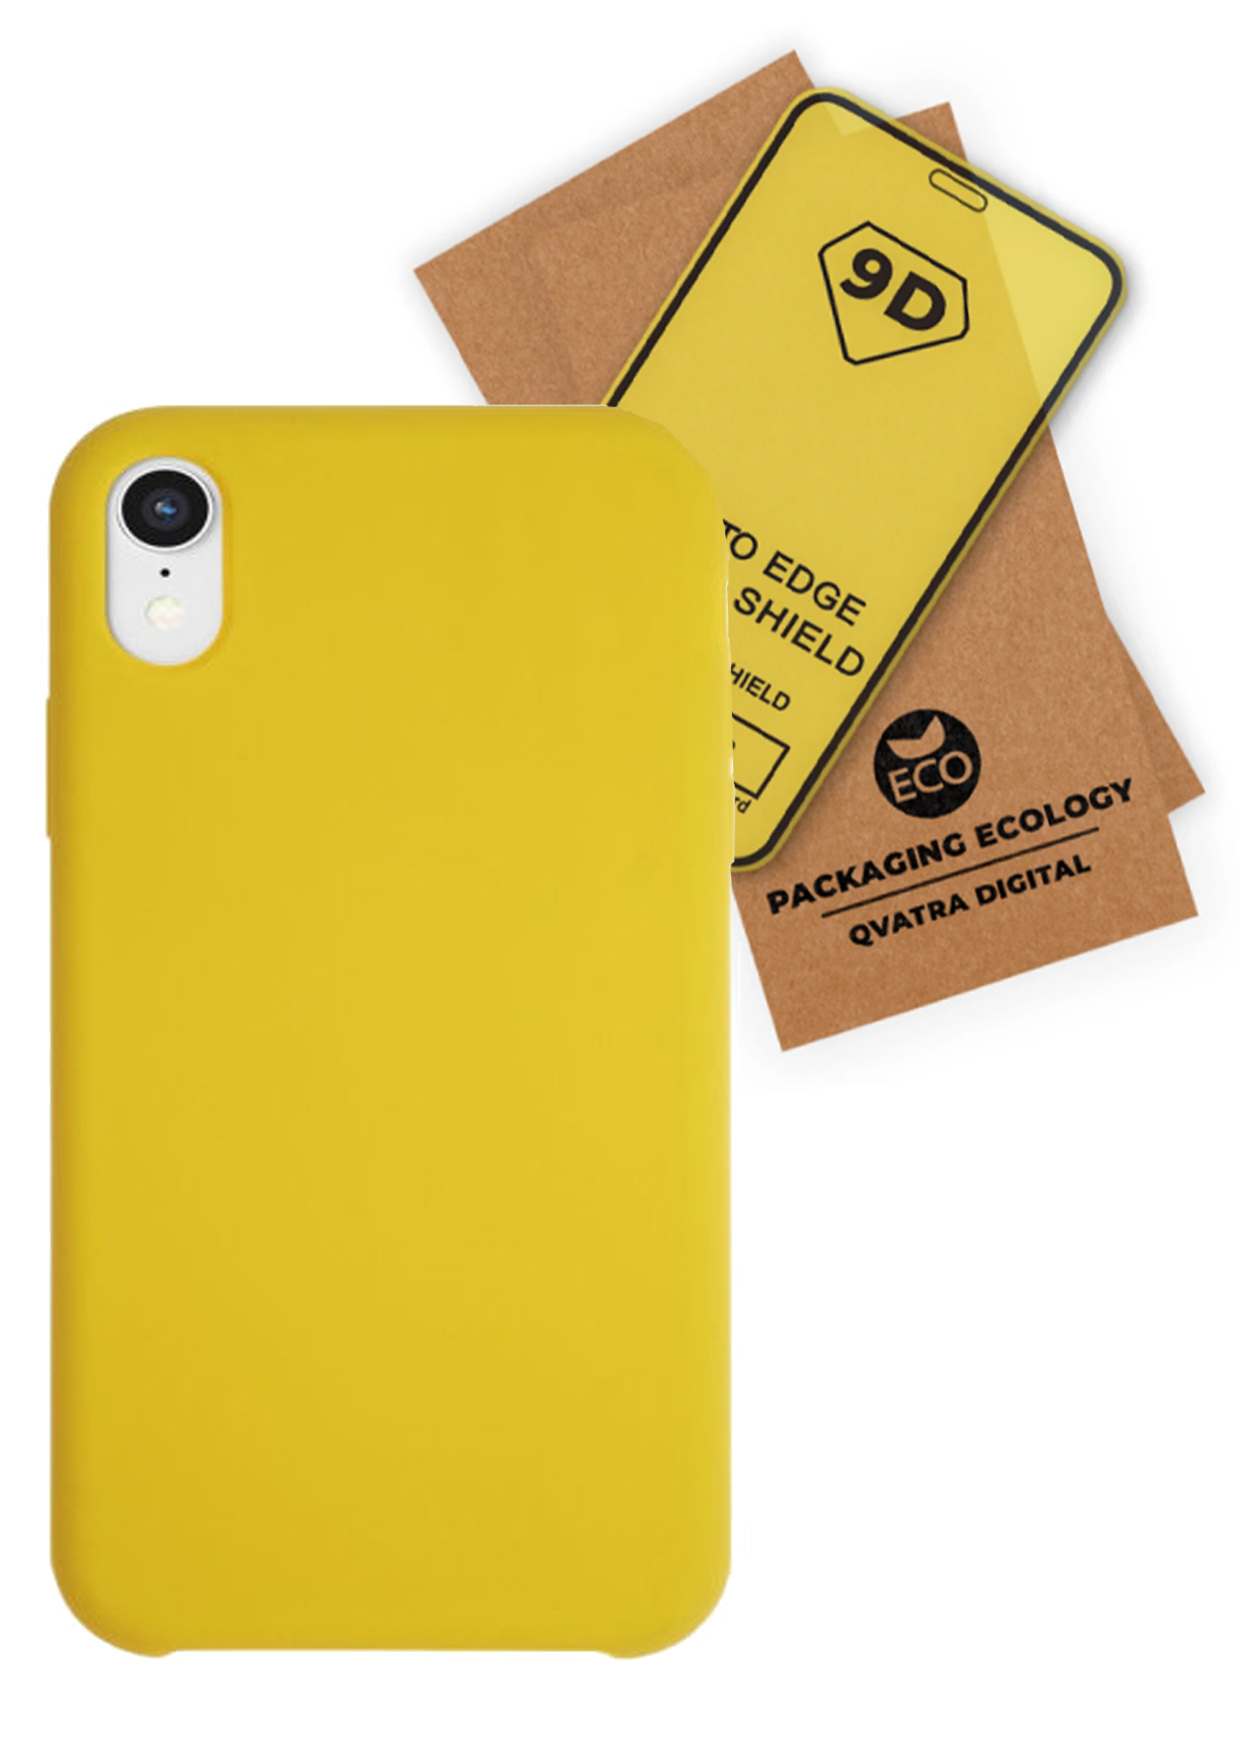 фото Чехол с защитным стеклом qvatra для iphone xr желтый